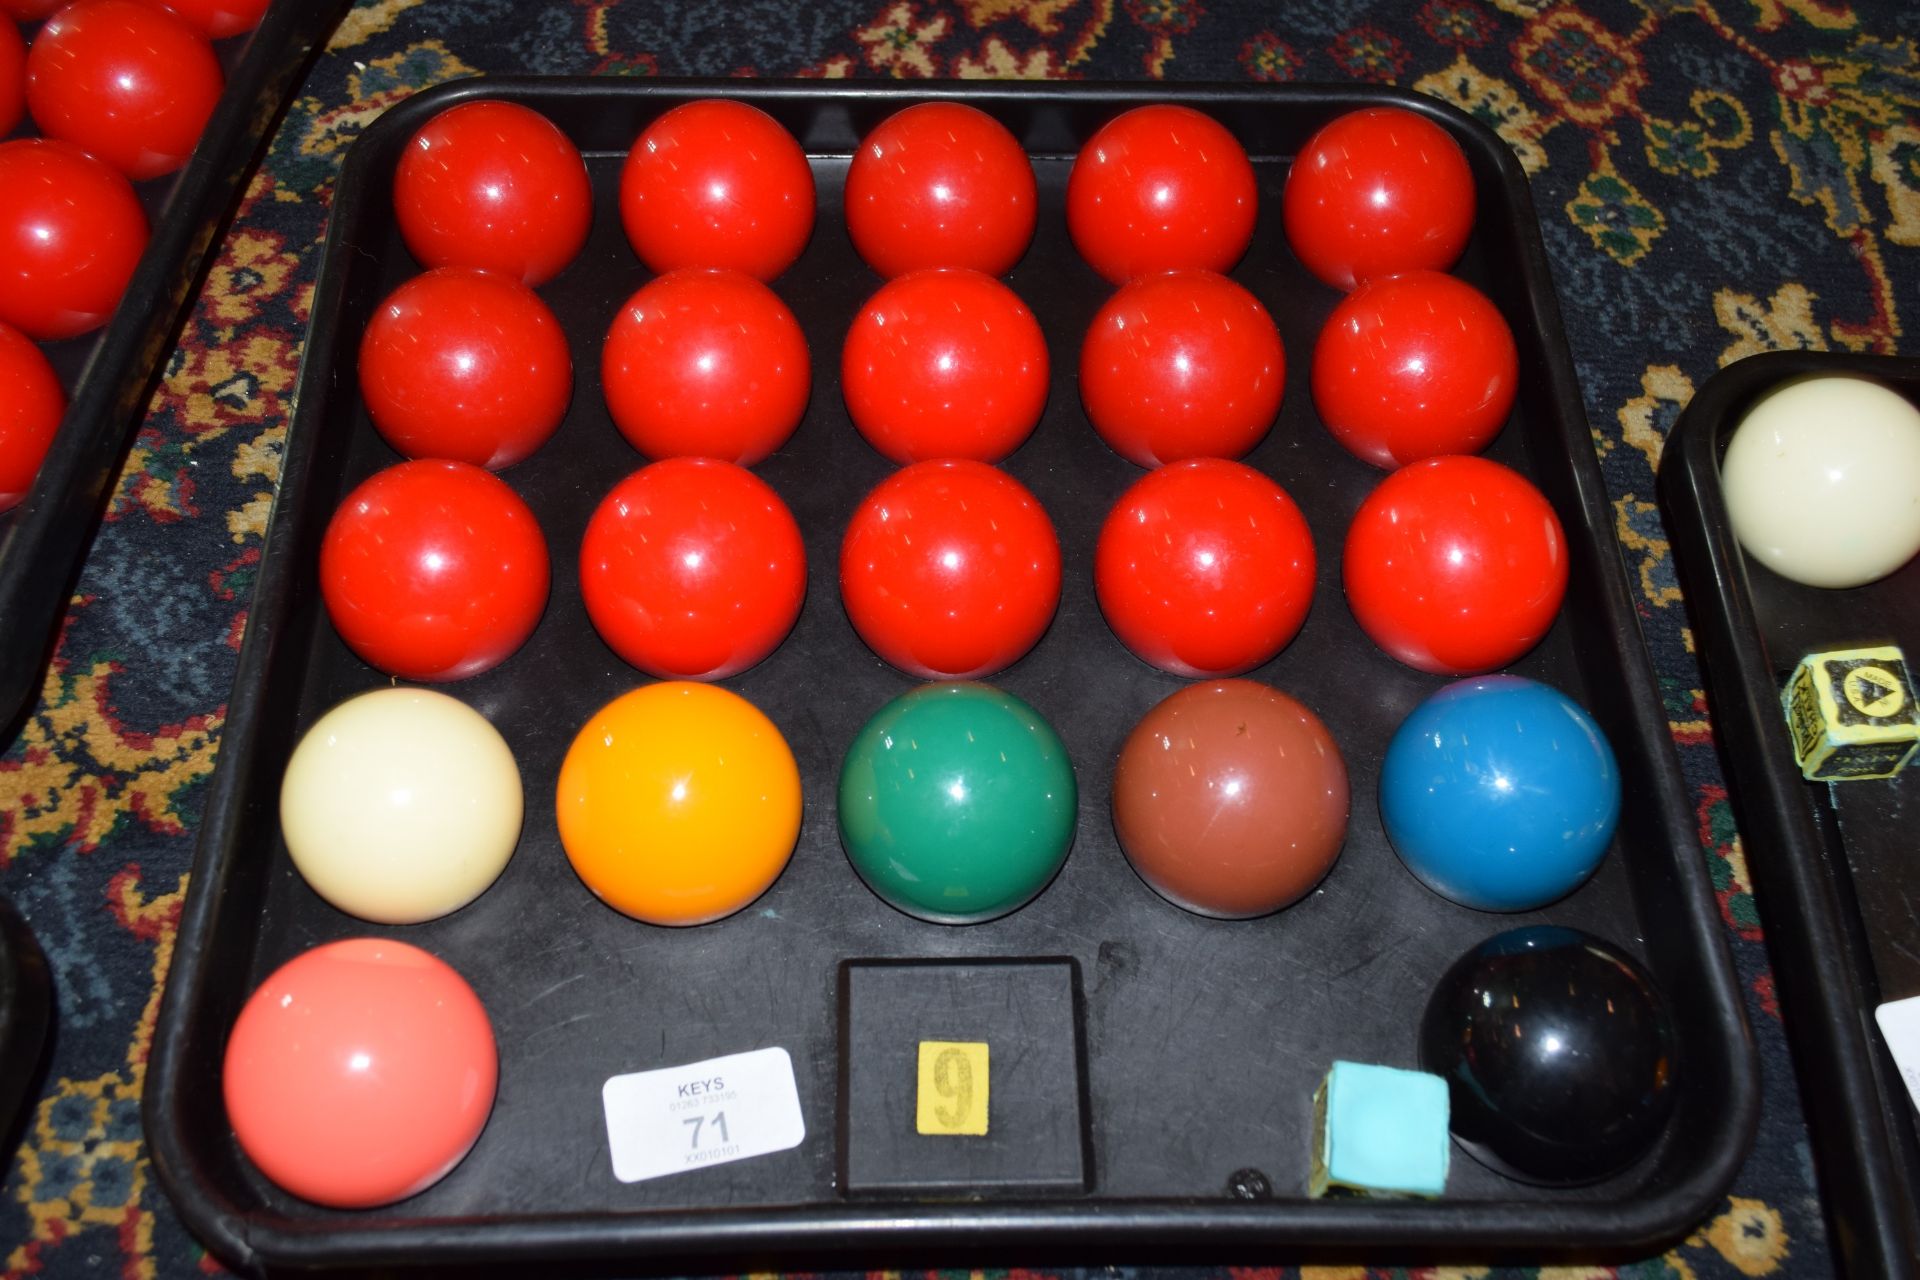 Full set of snooker balls